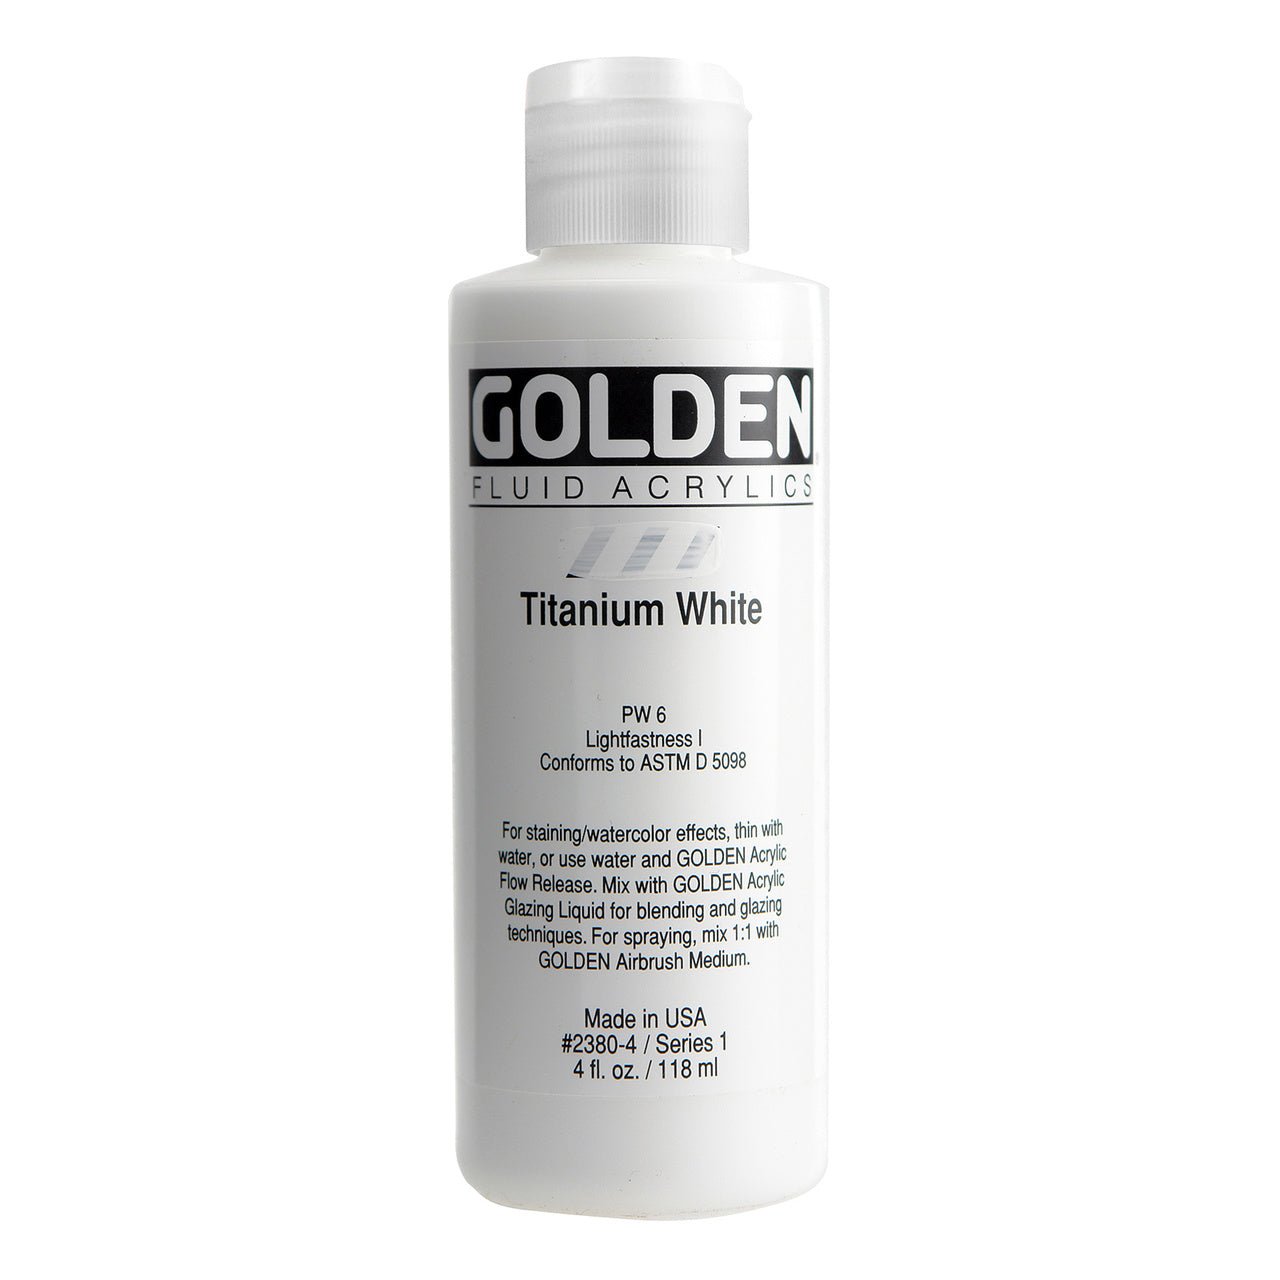 Golden Fluid Acrylic Titanium White 4 oz - merriartist.com